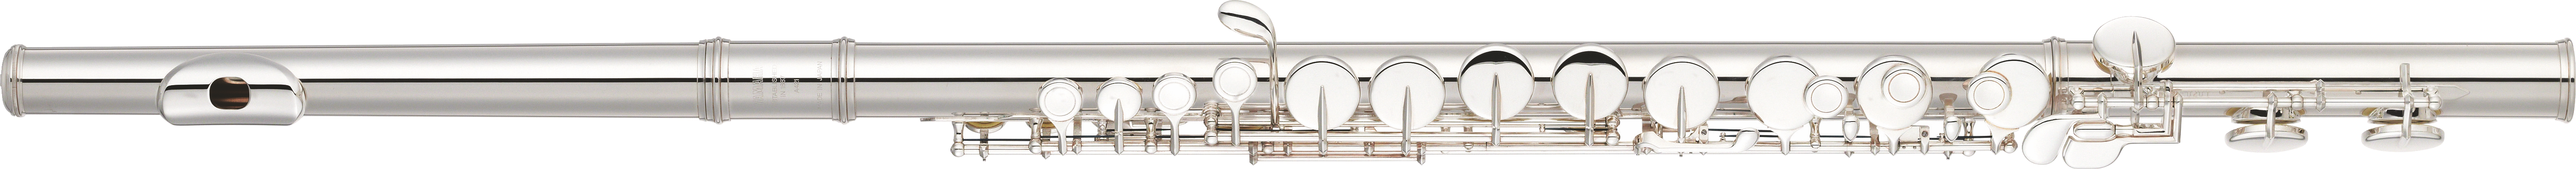 file yamaha flute yfl wikimedia commons #30657